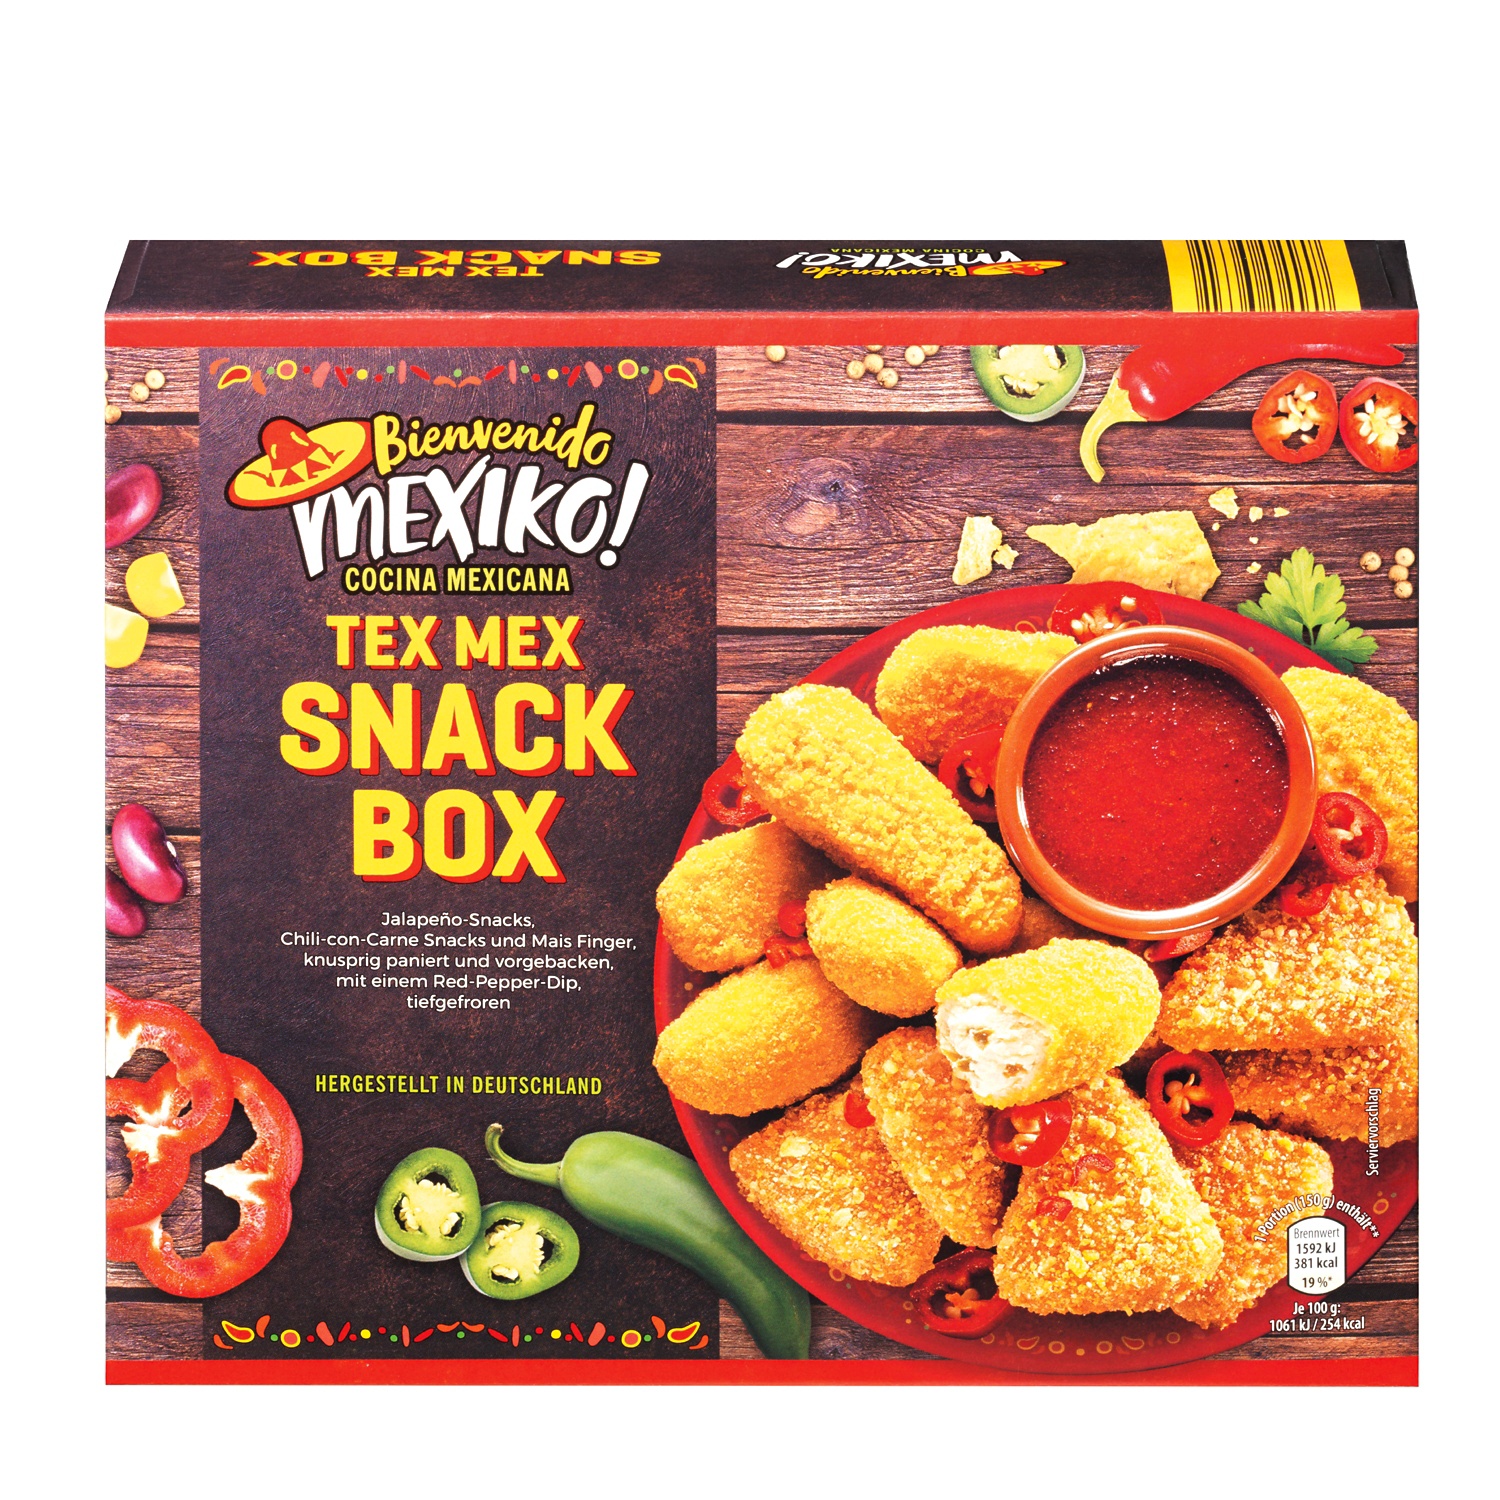 BIENVENIDO MEXIKO Snack box, Tex mex